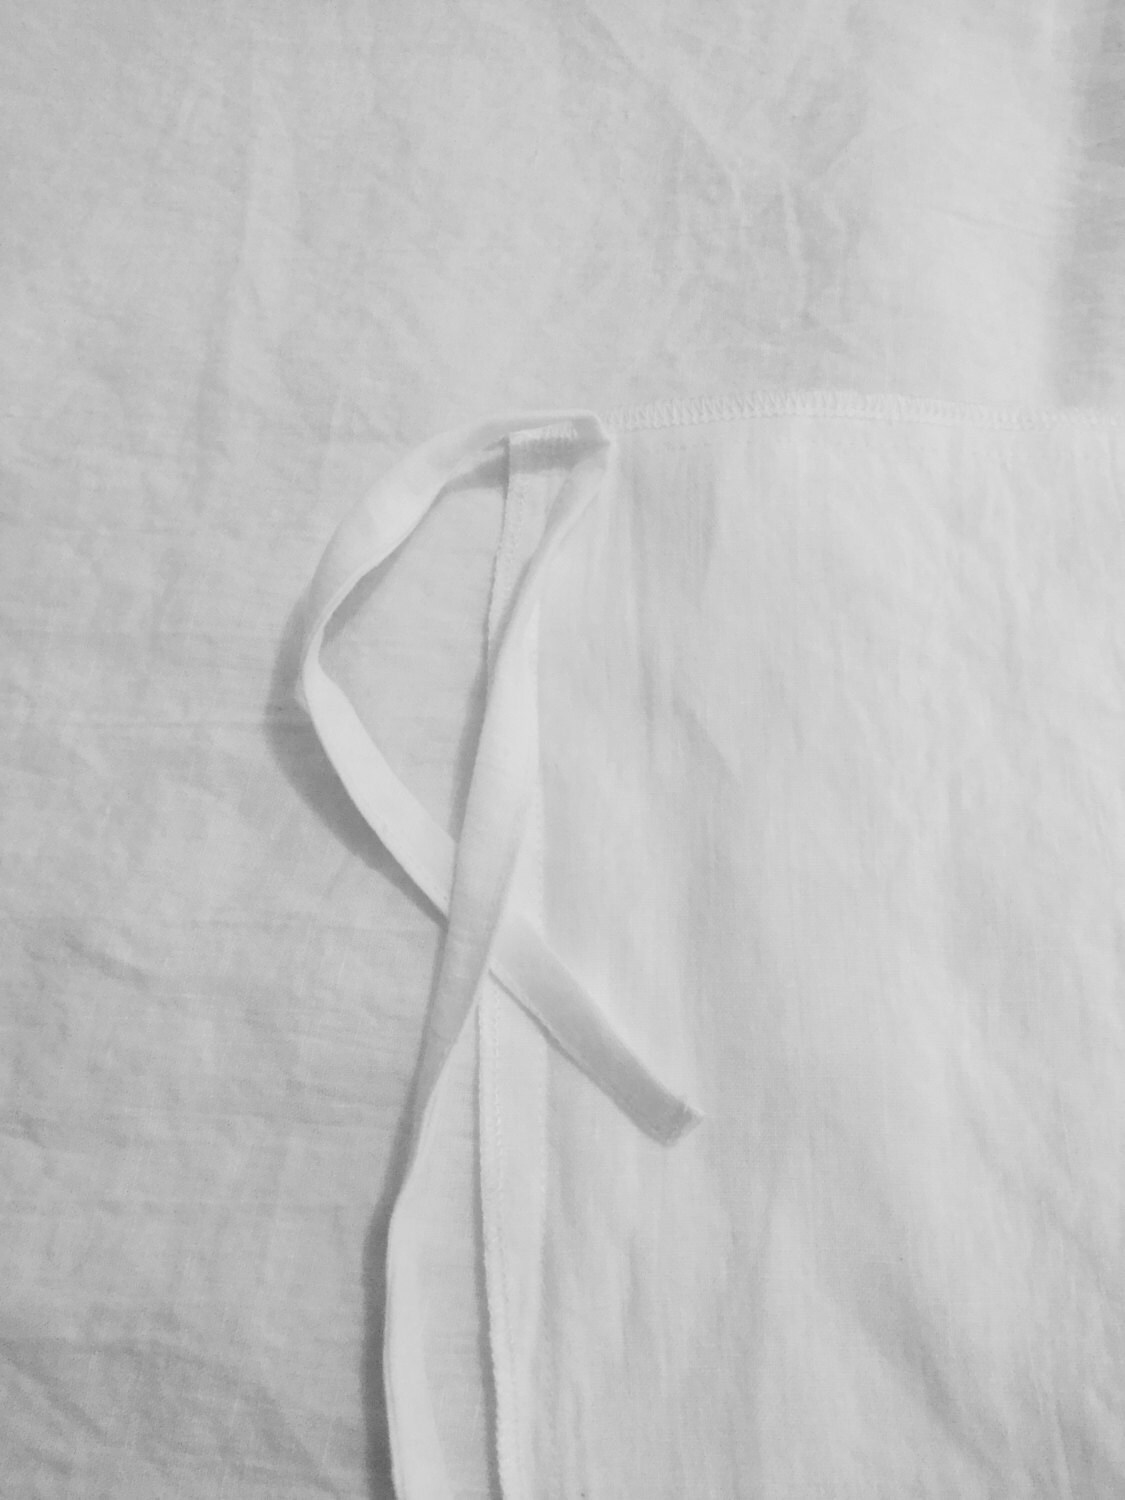 White Linen Duvet Set King Size Queen Full 100% Pure | Etsy